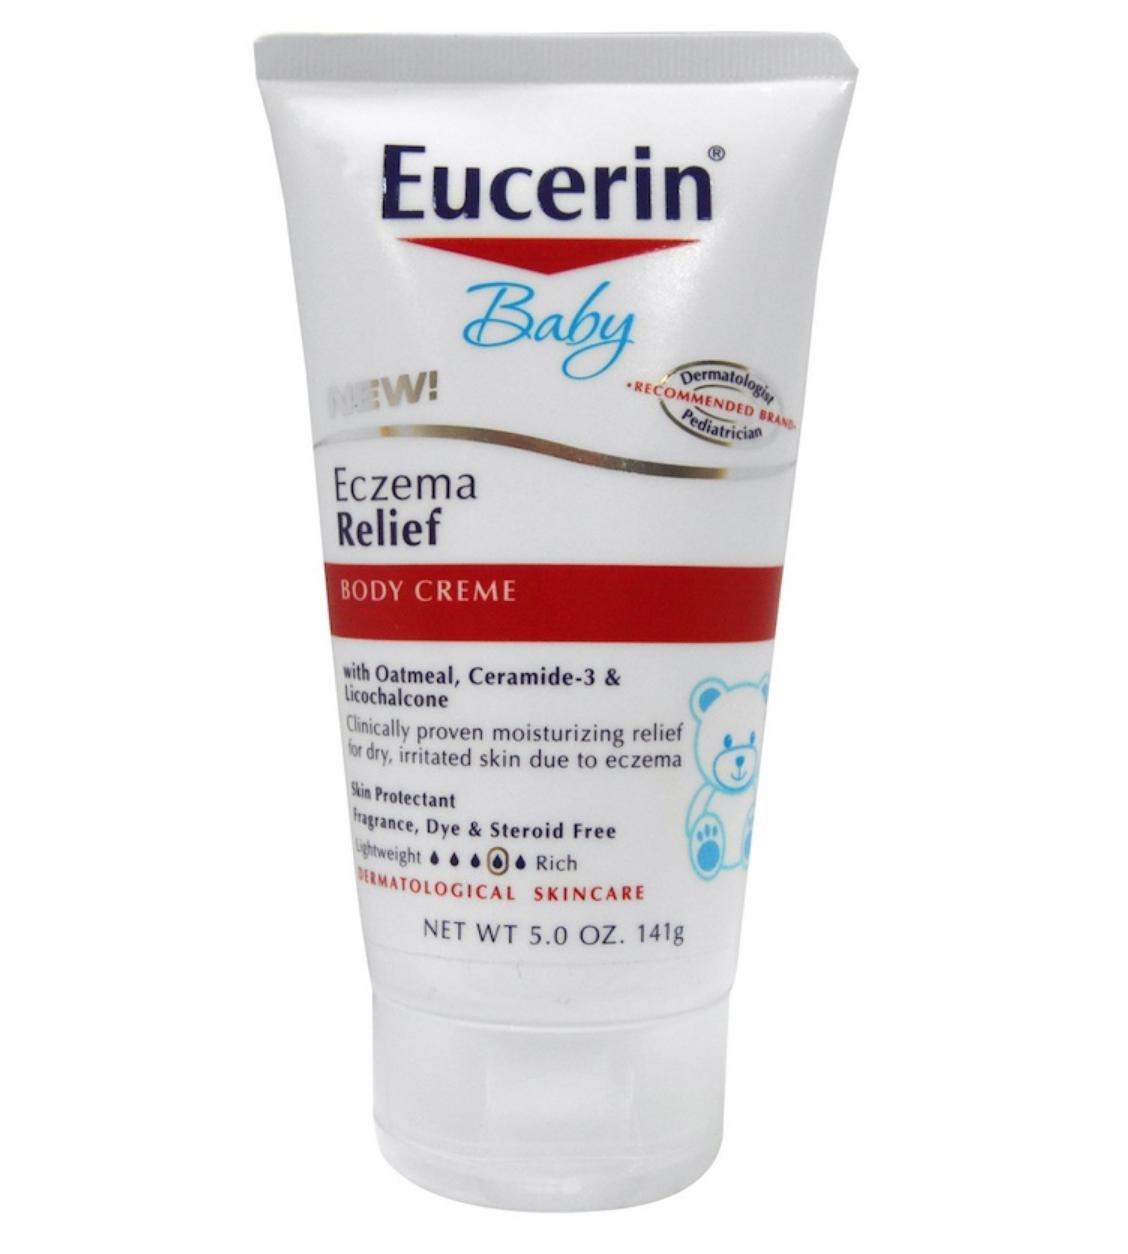 ซื้อที่ไหน Eucerin Baby Eczema Relief Body Creme